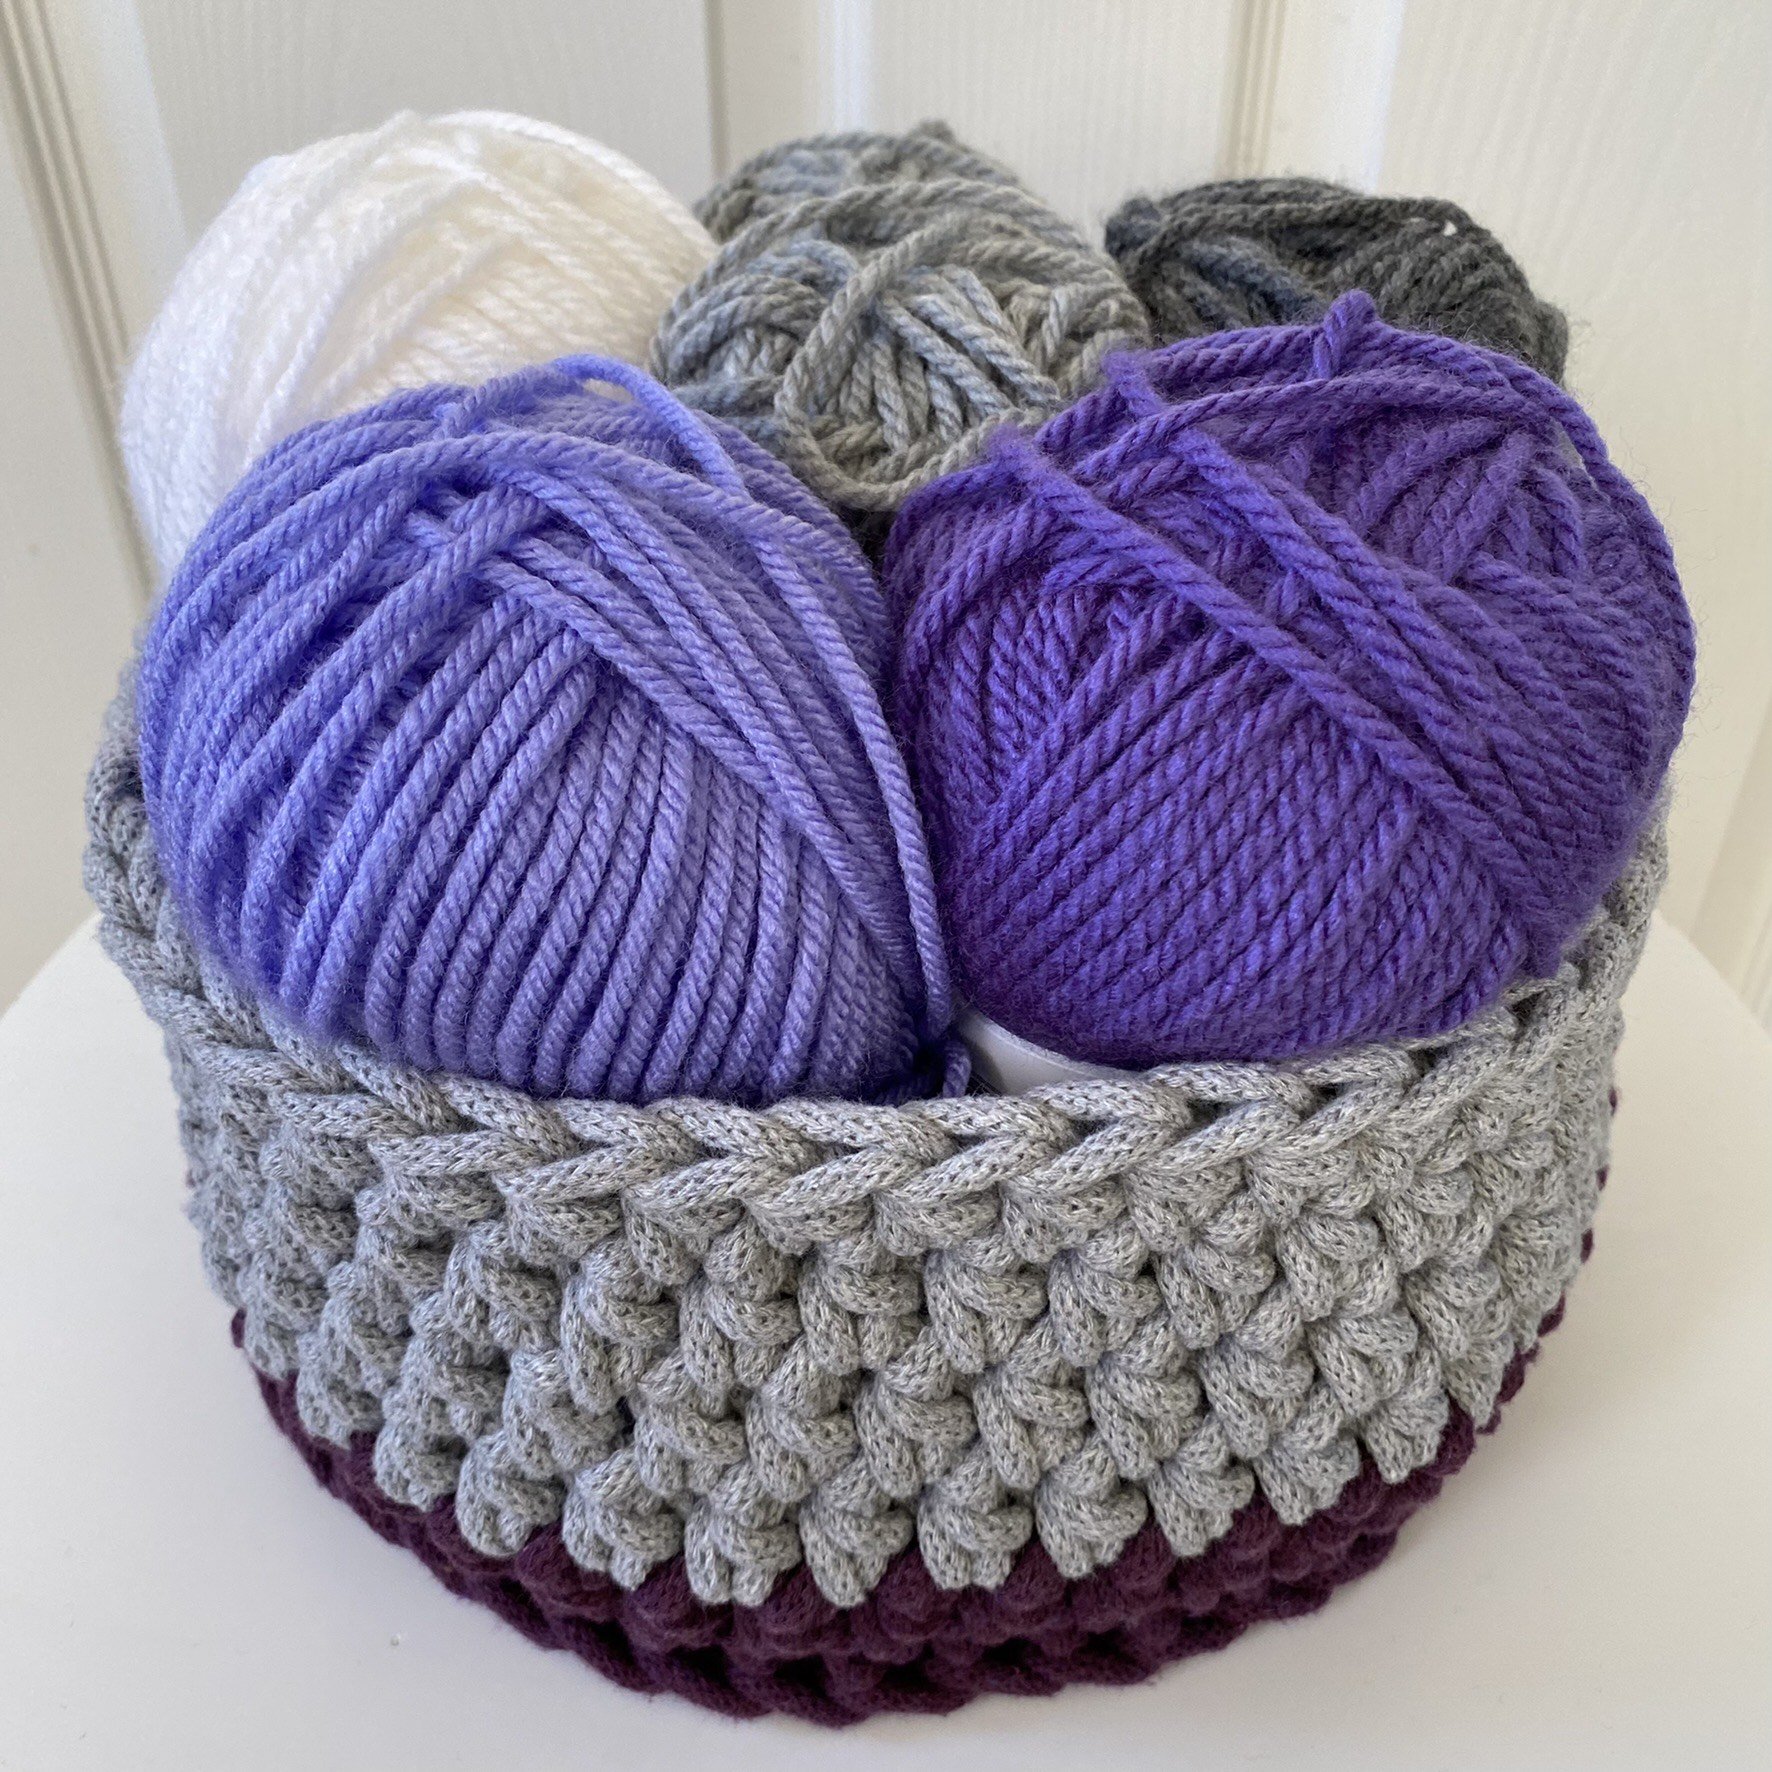 Next Level Crochet: Rope Basket! — Lark Design Make